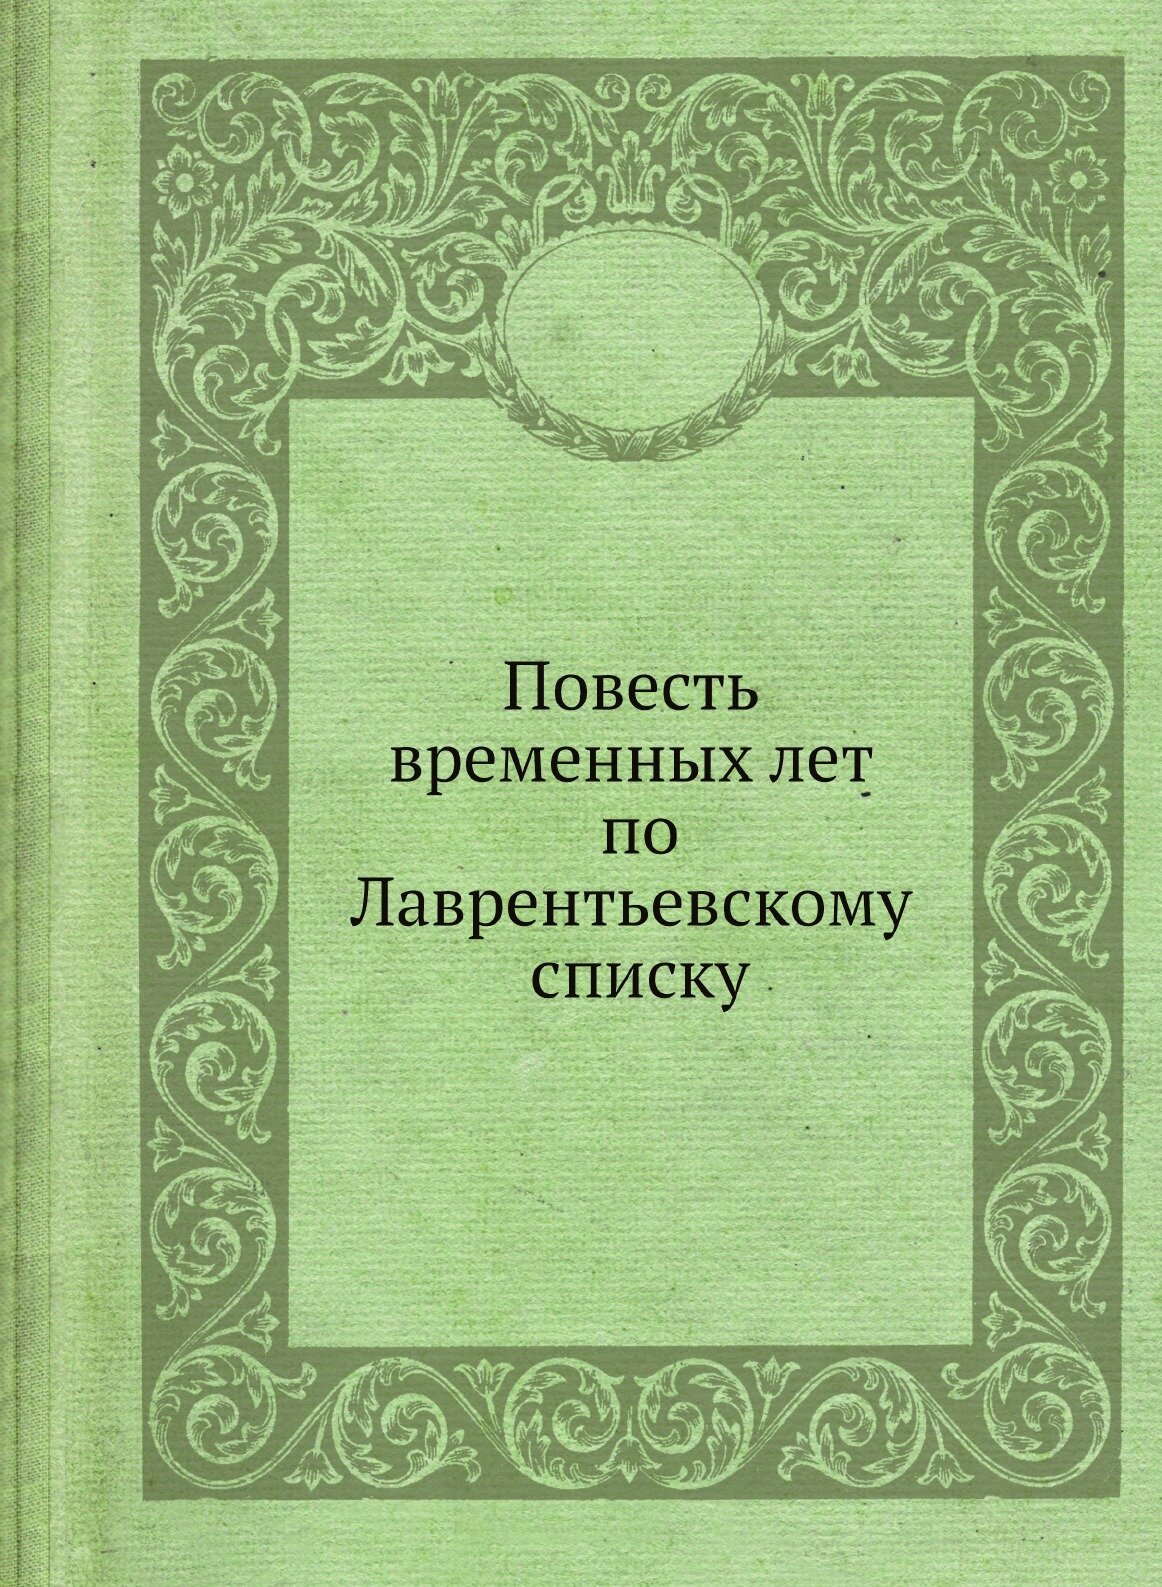 Повесть временных лет по Лаврентьевскому списку (церковно-славянский язык, восстановления копия издания 1872 г.)